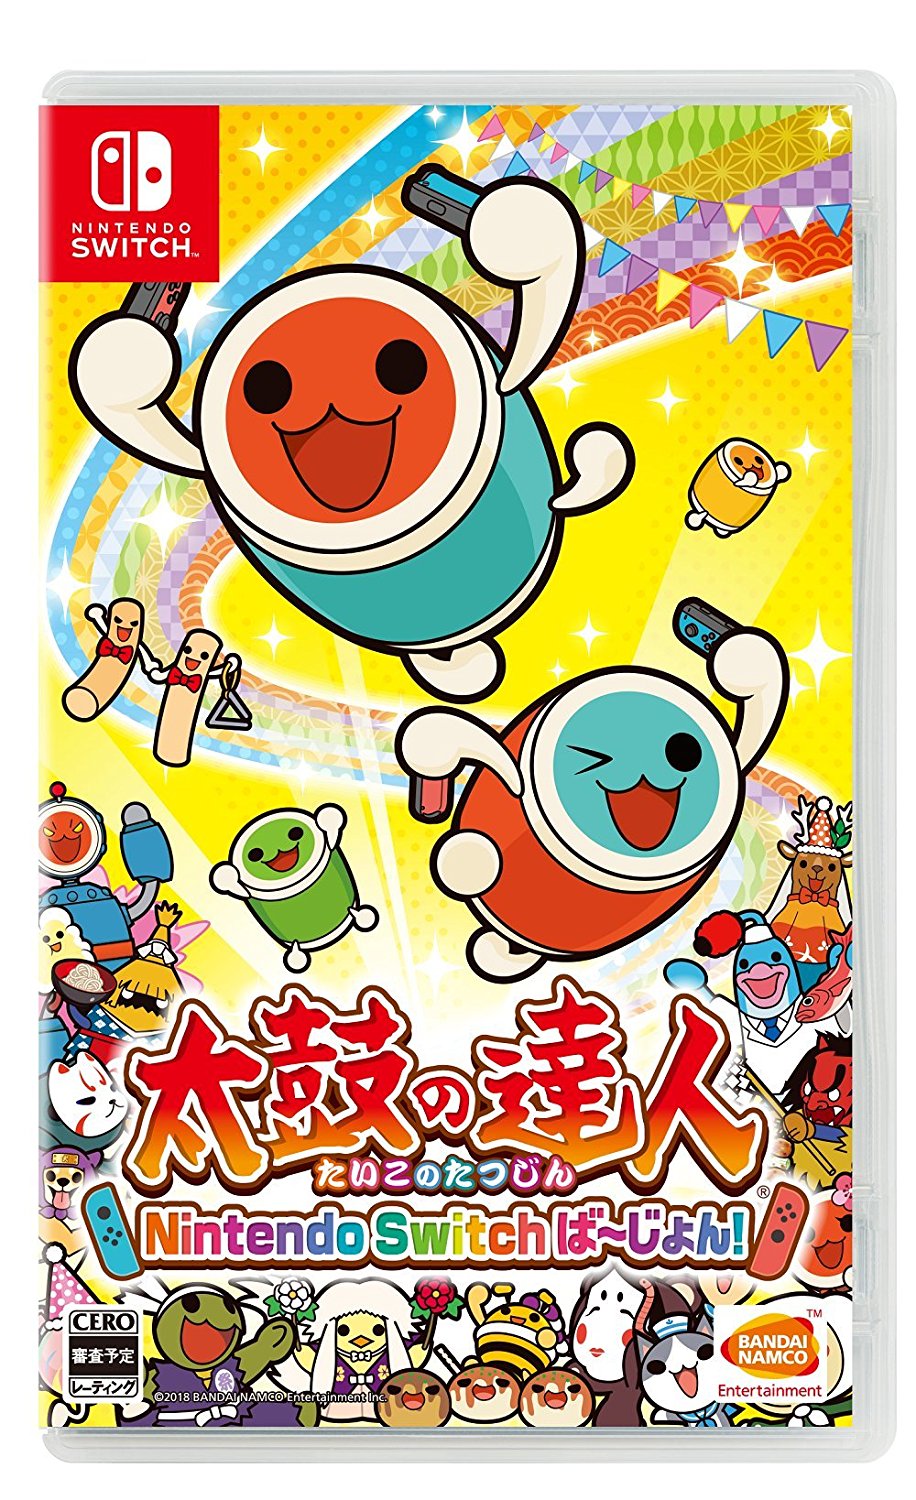 太鼓の達人 Nintendo Switchば～じょん! 』の発売日が2018年7月19日に